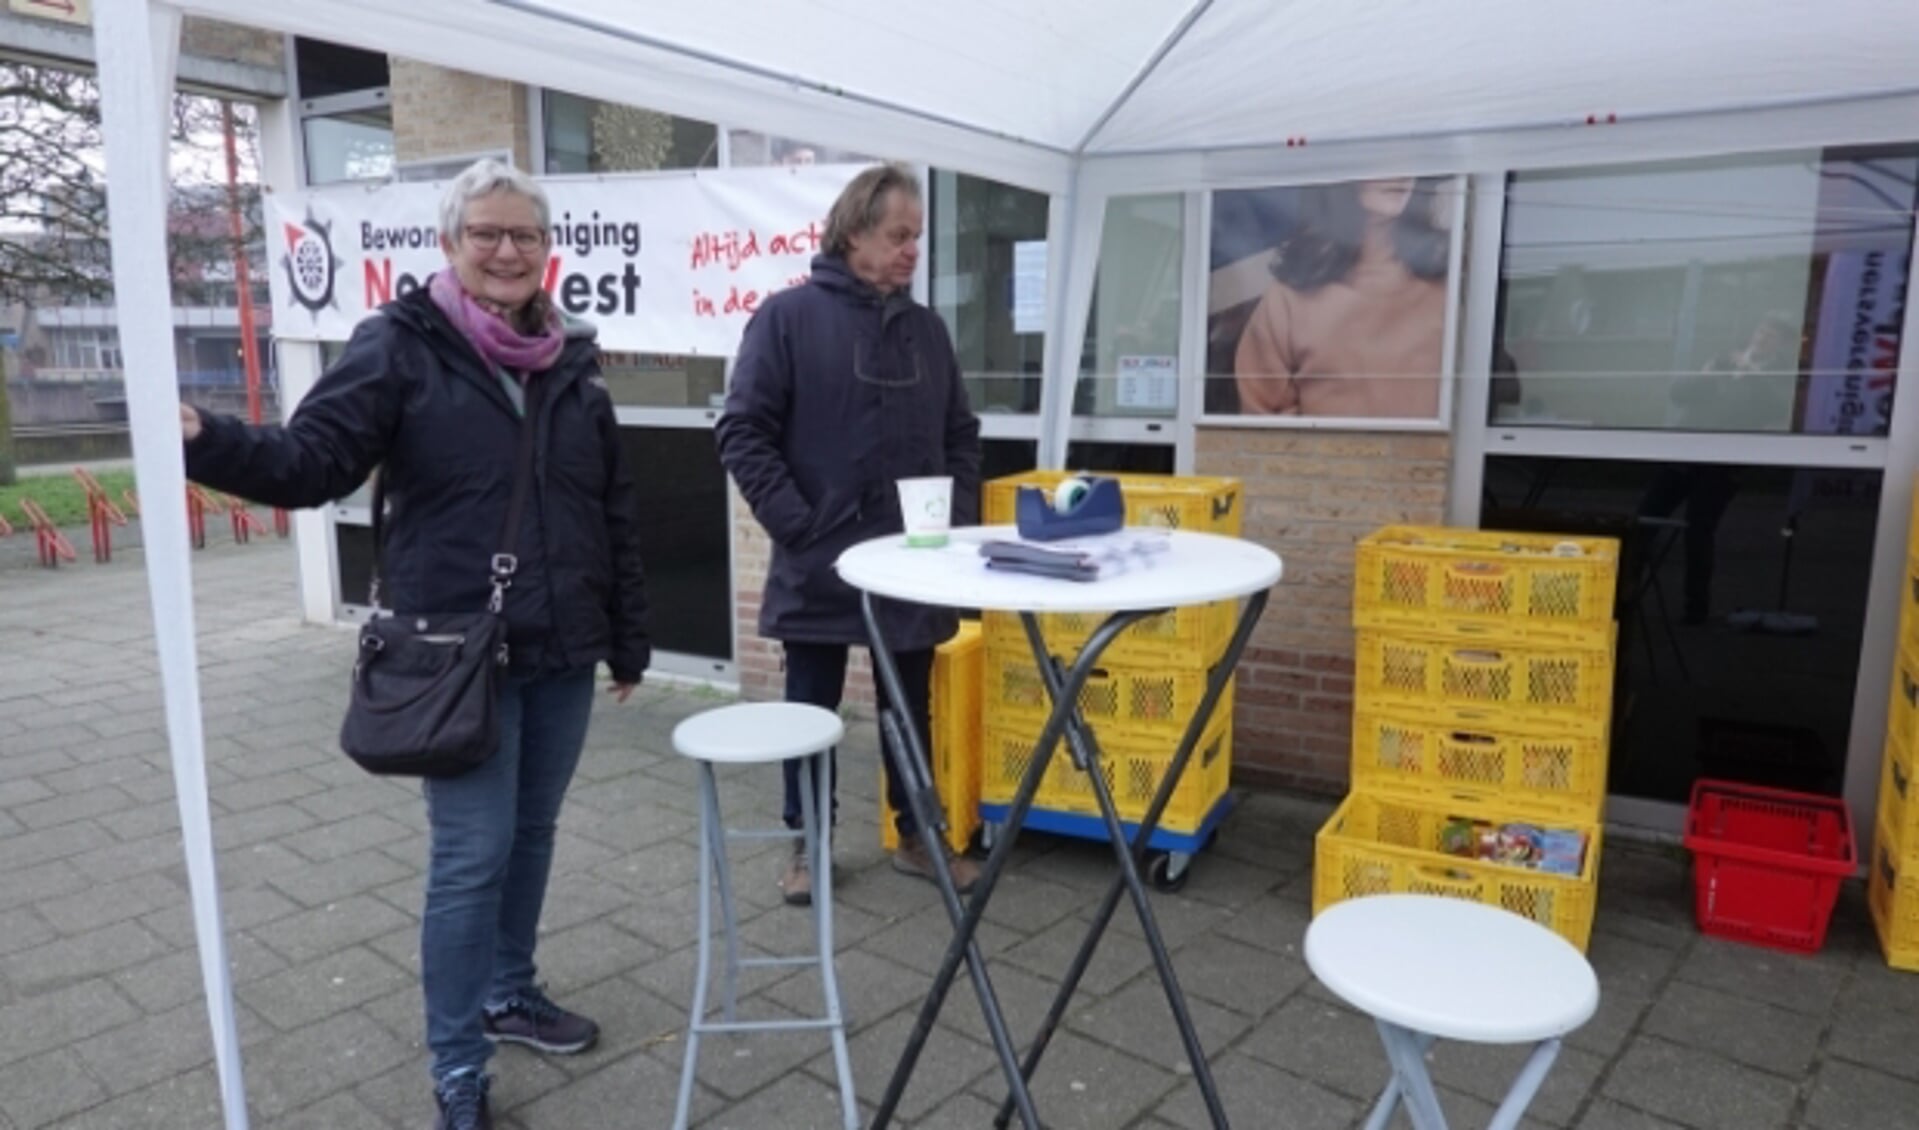 Op de dagen rond Oud en Nieuw stonden vrijwilligers met kratten en flyers bij de Spar  om aandacht te vragen voor de actie en spullen in ontvangst te nemen voor de Voedselbank Neder Veluwe.